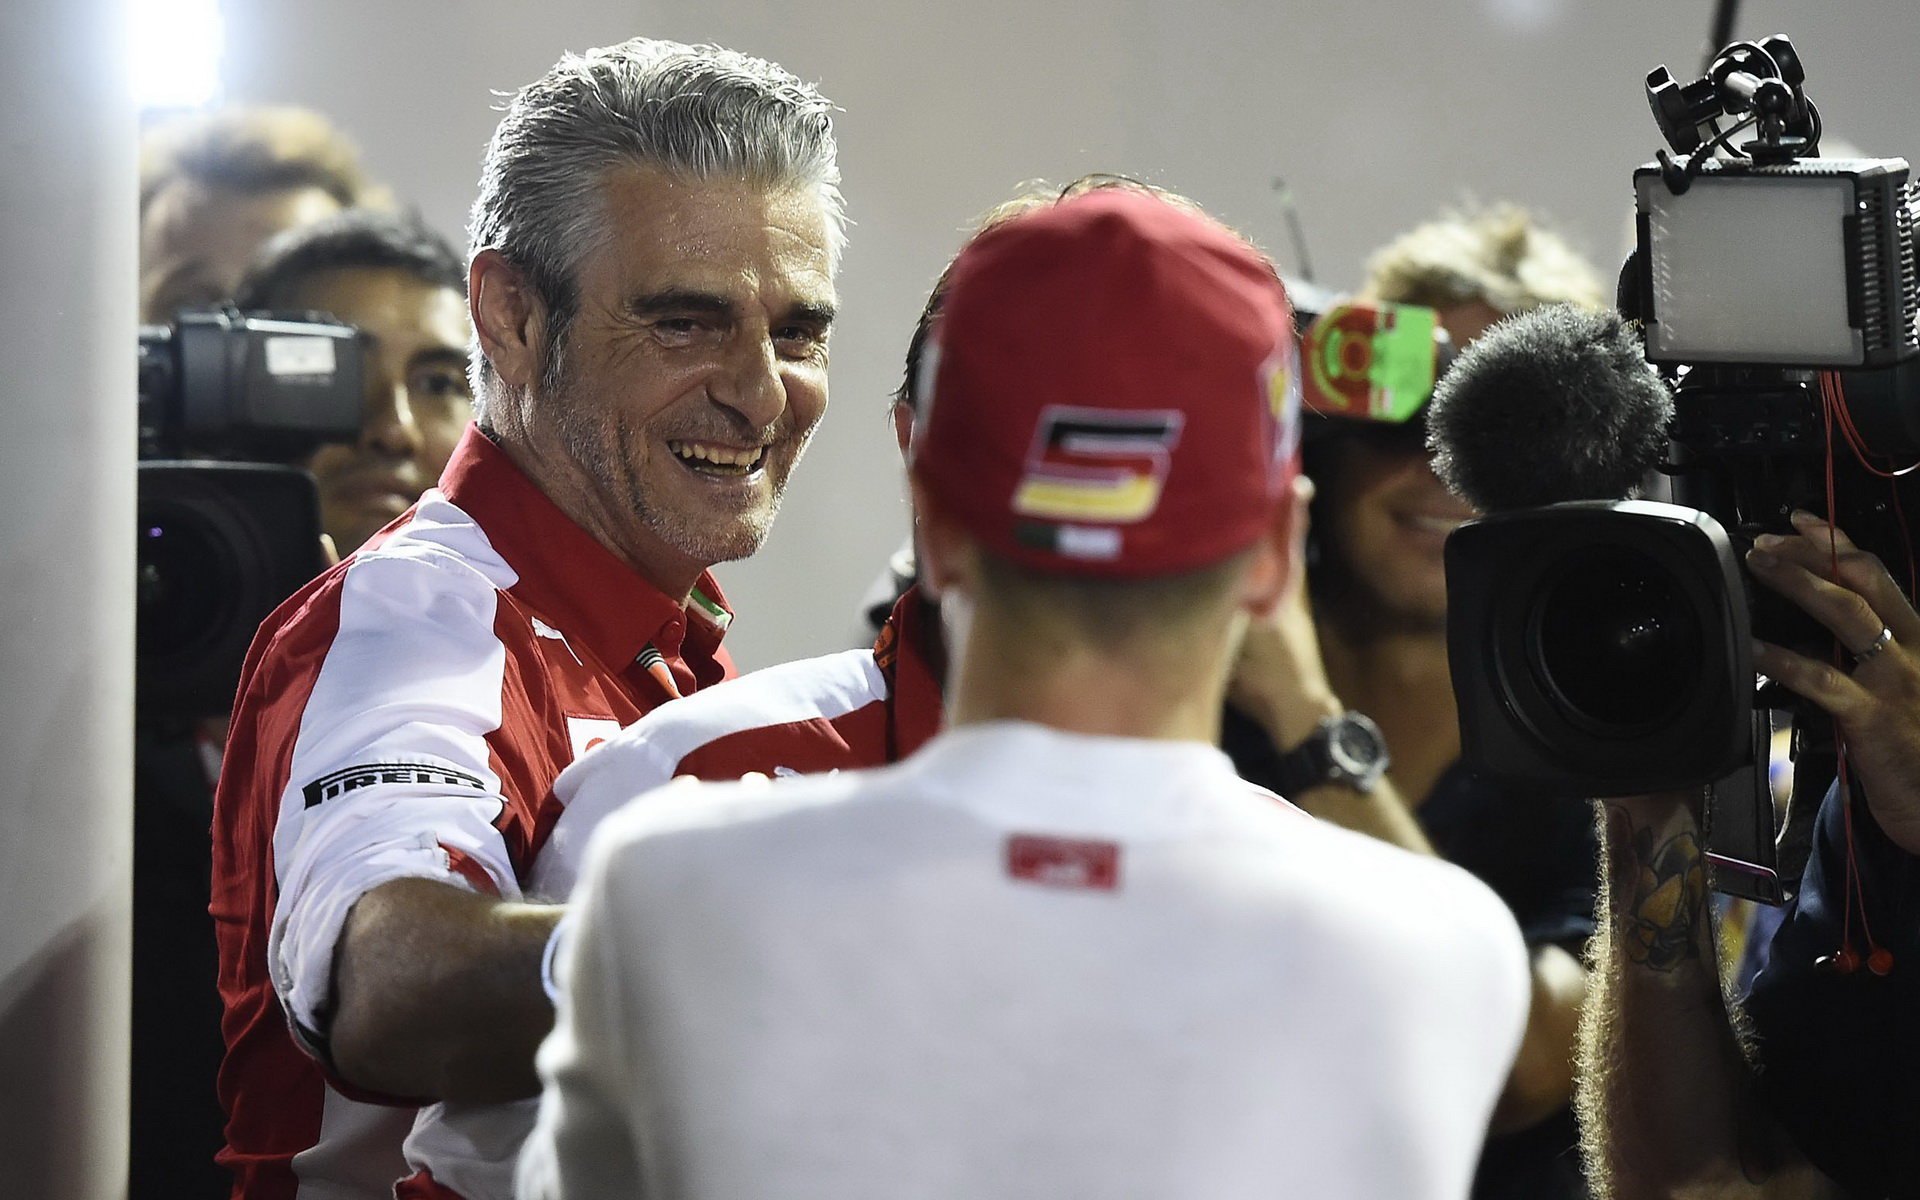 Maurizio Arrivabene a Ferrari budou mít přímo v týmu zástupce Pirelli